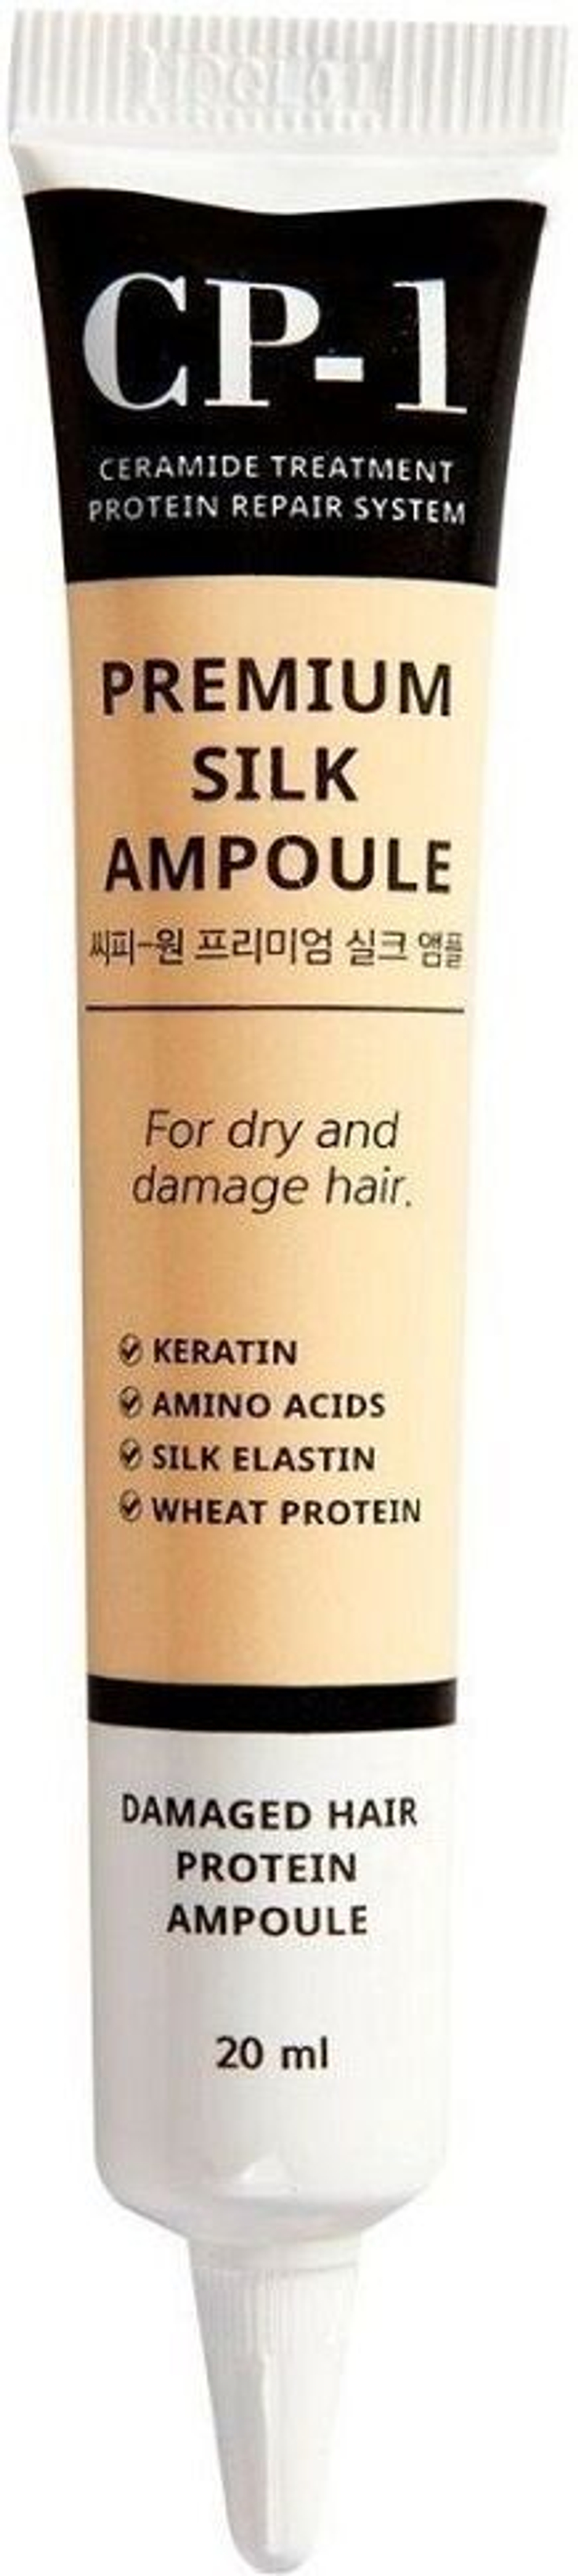 Сыворотка для волос Esthetic House CP-1 Premium Silk Ampoule с протеинами шелка, жожоба, арганы, церамидом 20 мл